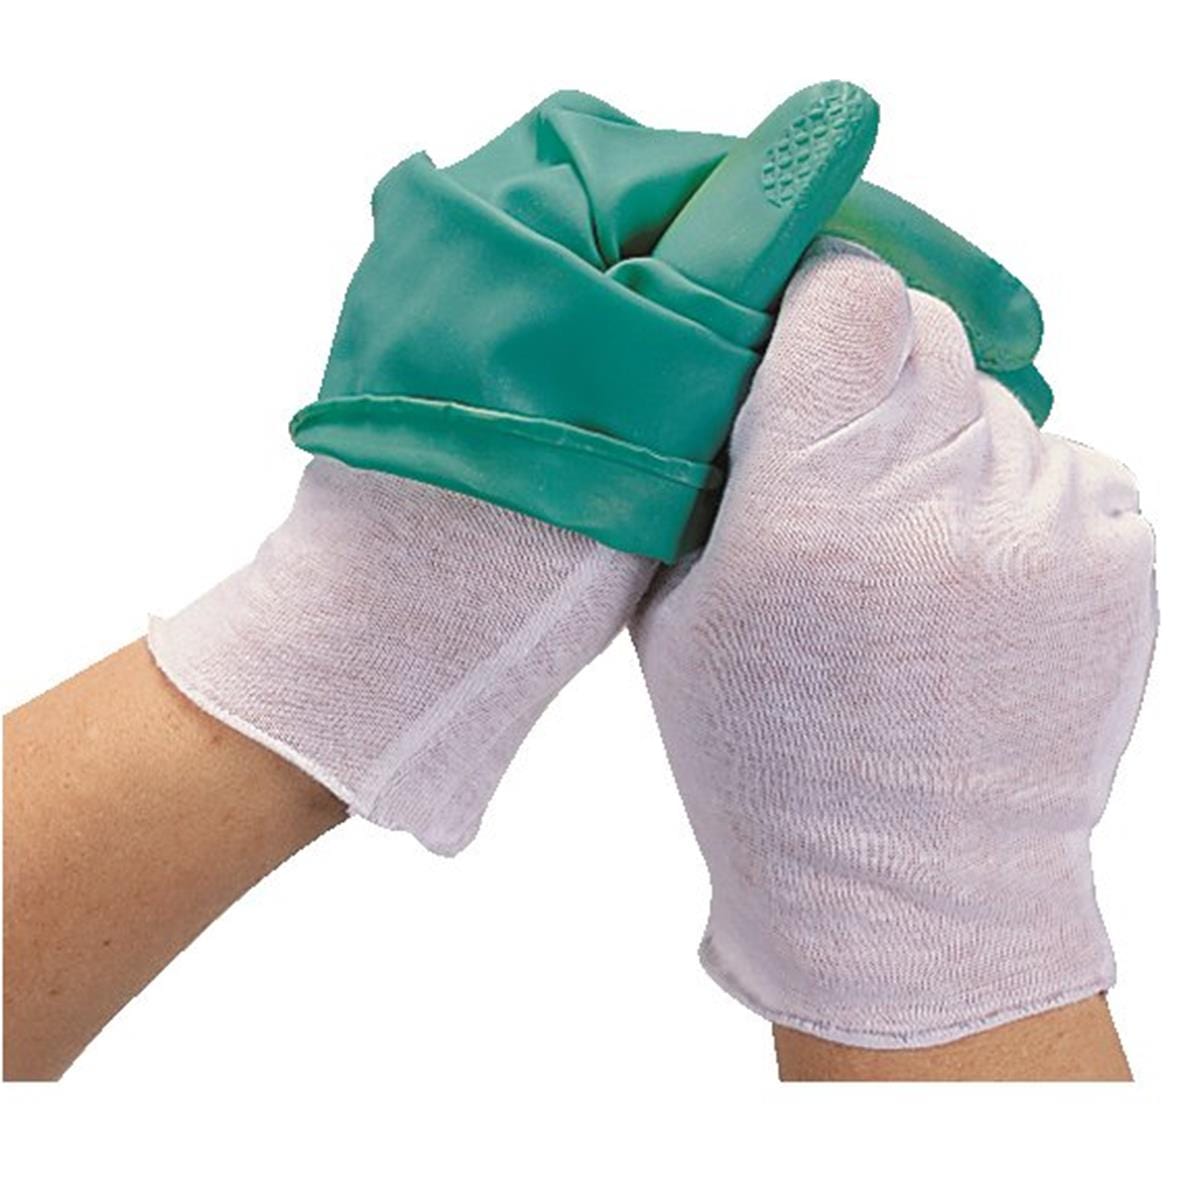 Disposable Cotton Glove Liners, Dozen Pair